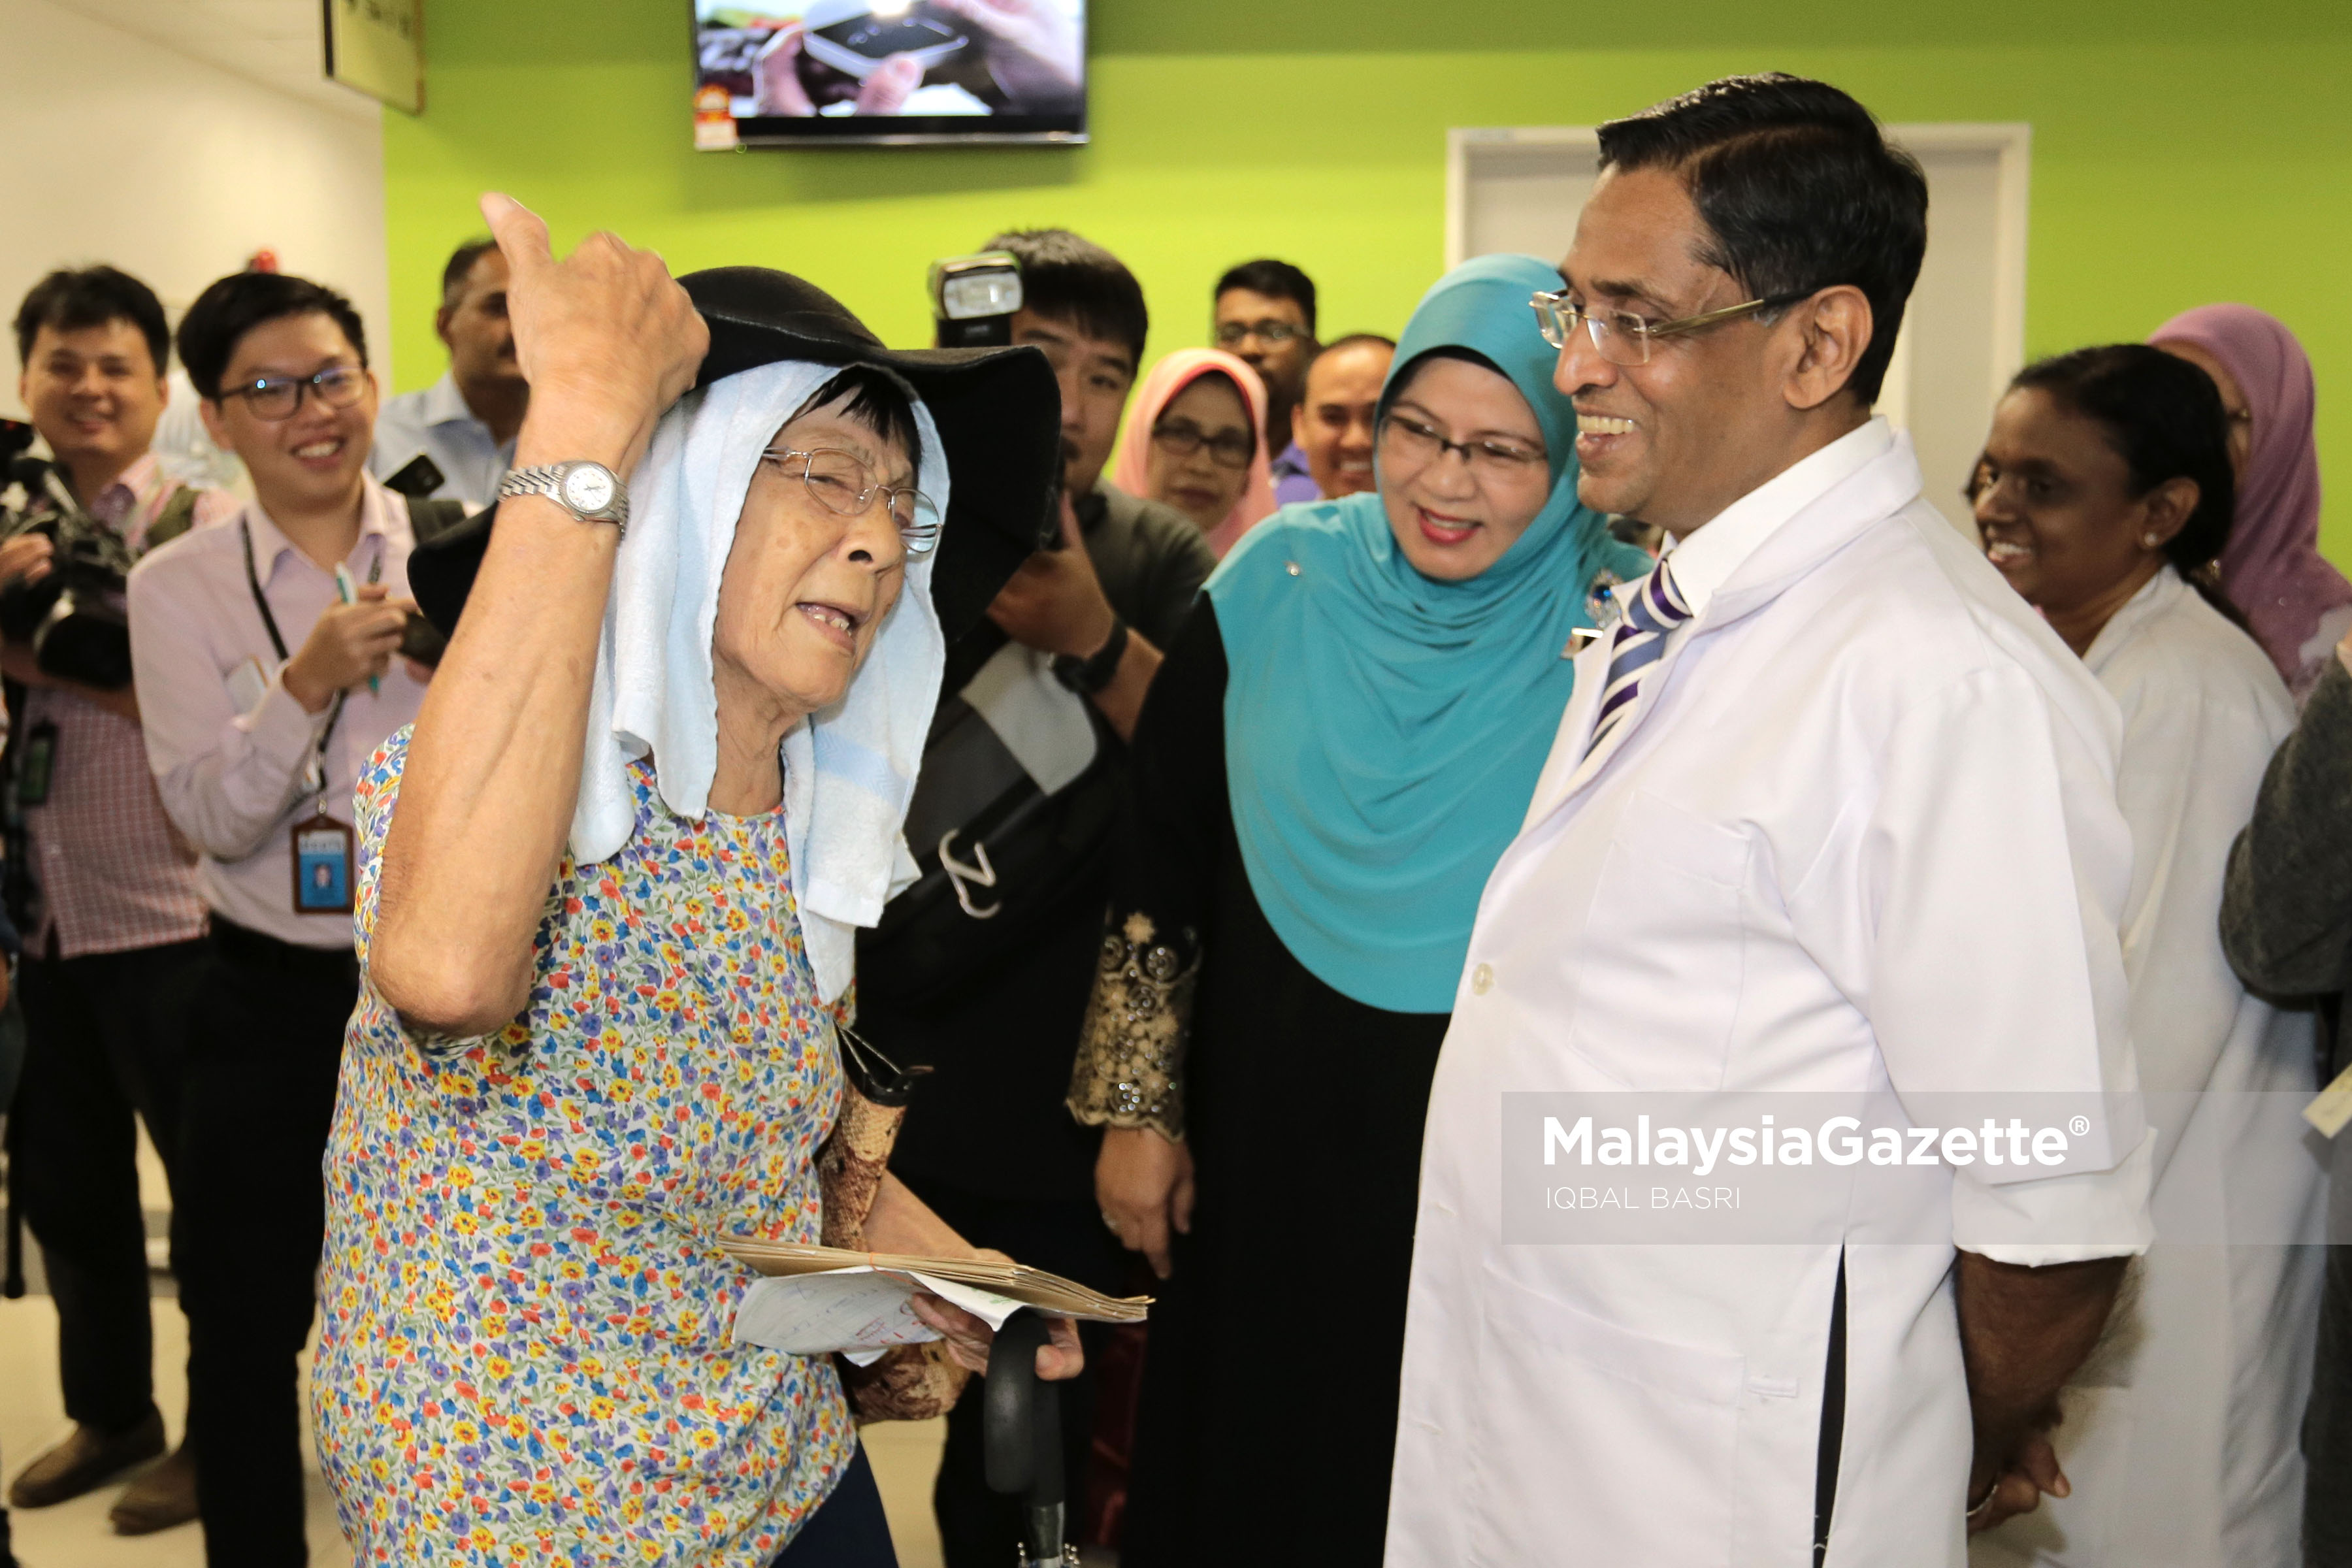 Menteri Kesihatan, Datuk Seri S. Subramaniam beramah mesra bersama orang awam yang mendapatkan rawatan ketika membuat lawatan di Klinik Kesihatan Kuala Lumpur. foto IQBAL BASRI, 06 APRIL 2017.